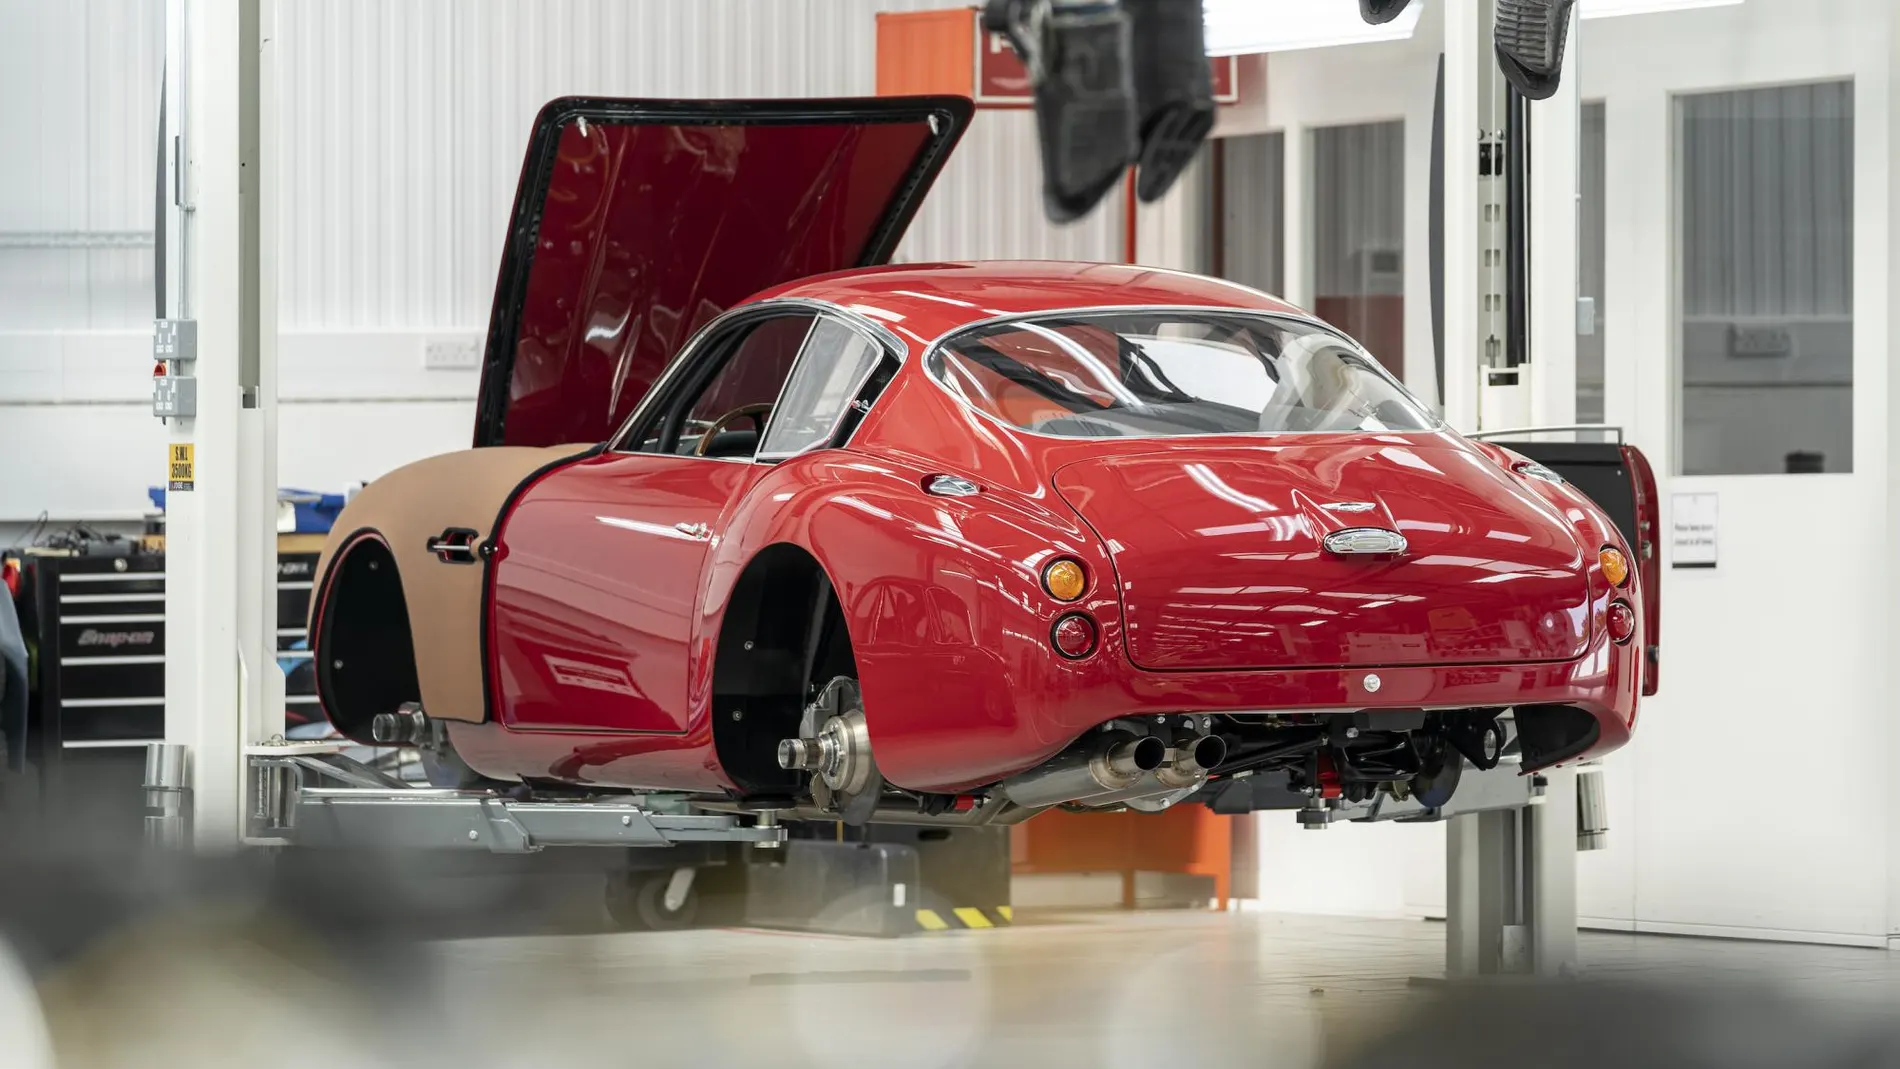 El nuevo filón de Aston Martin: fabricar modelos antiguos a 7 millones de euros la unidad